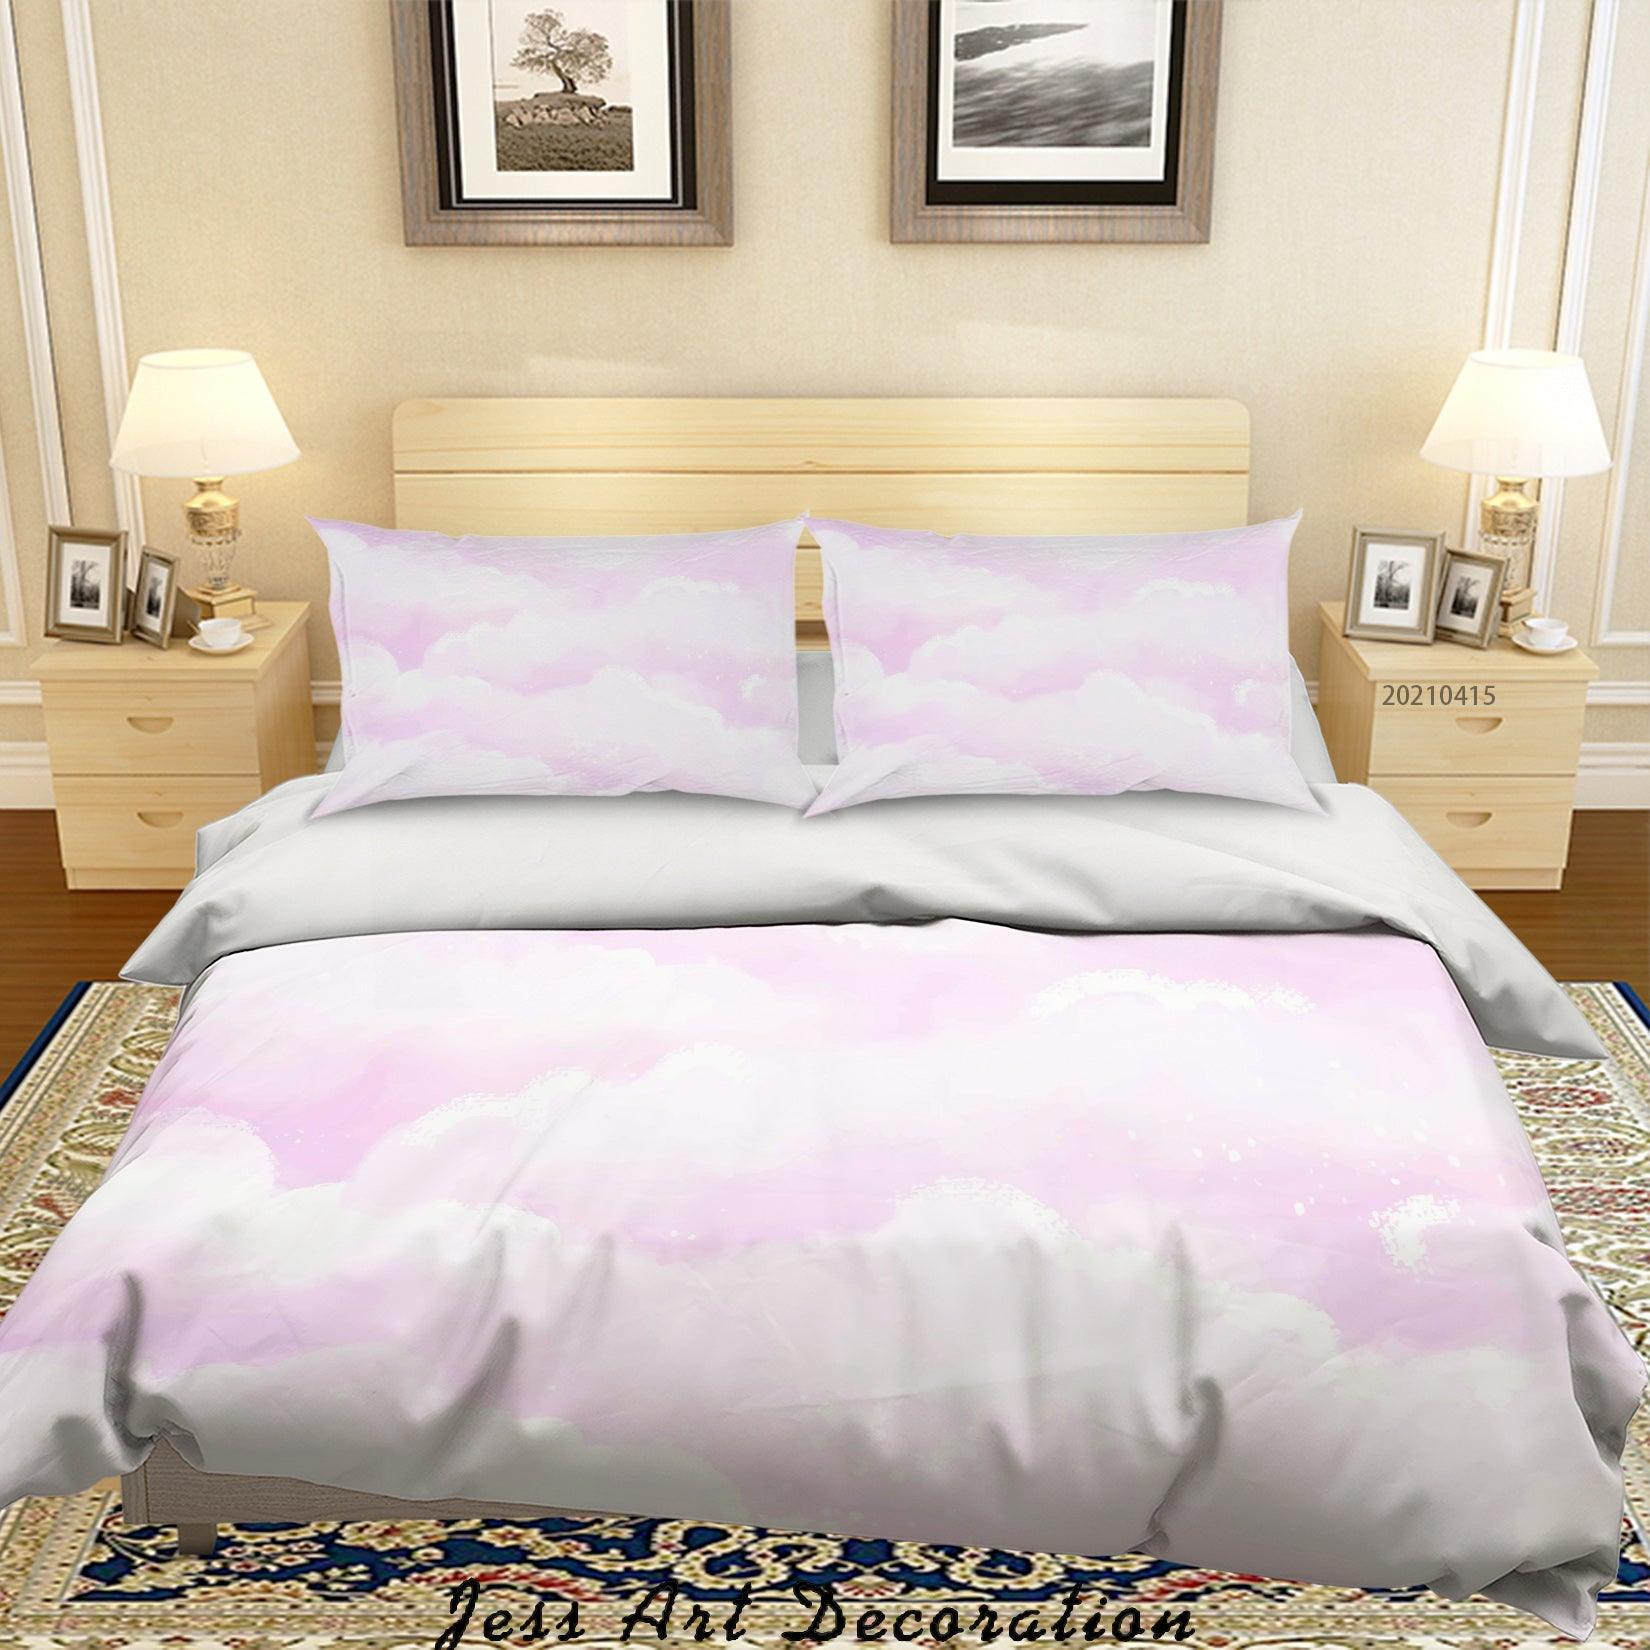 3D Watercolor Pink Cloud Quilt Cover Set Bedding Set Duvet Cover Pillowcases 115- Jess Art Decoration